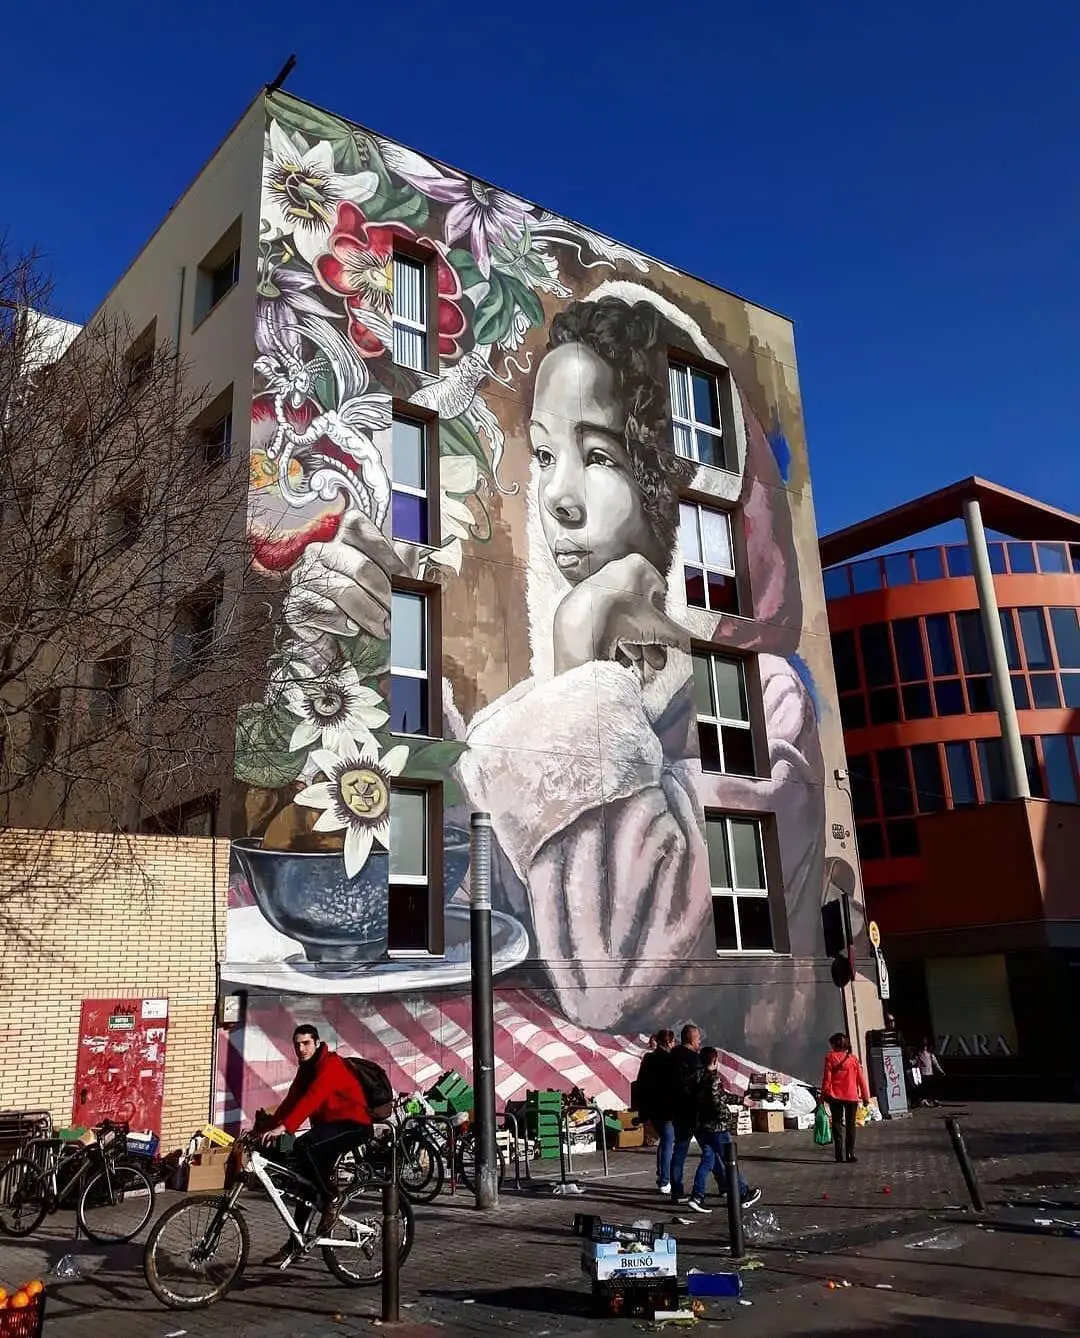 Vilanova i la Geltru Spain lula goce street art